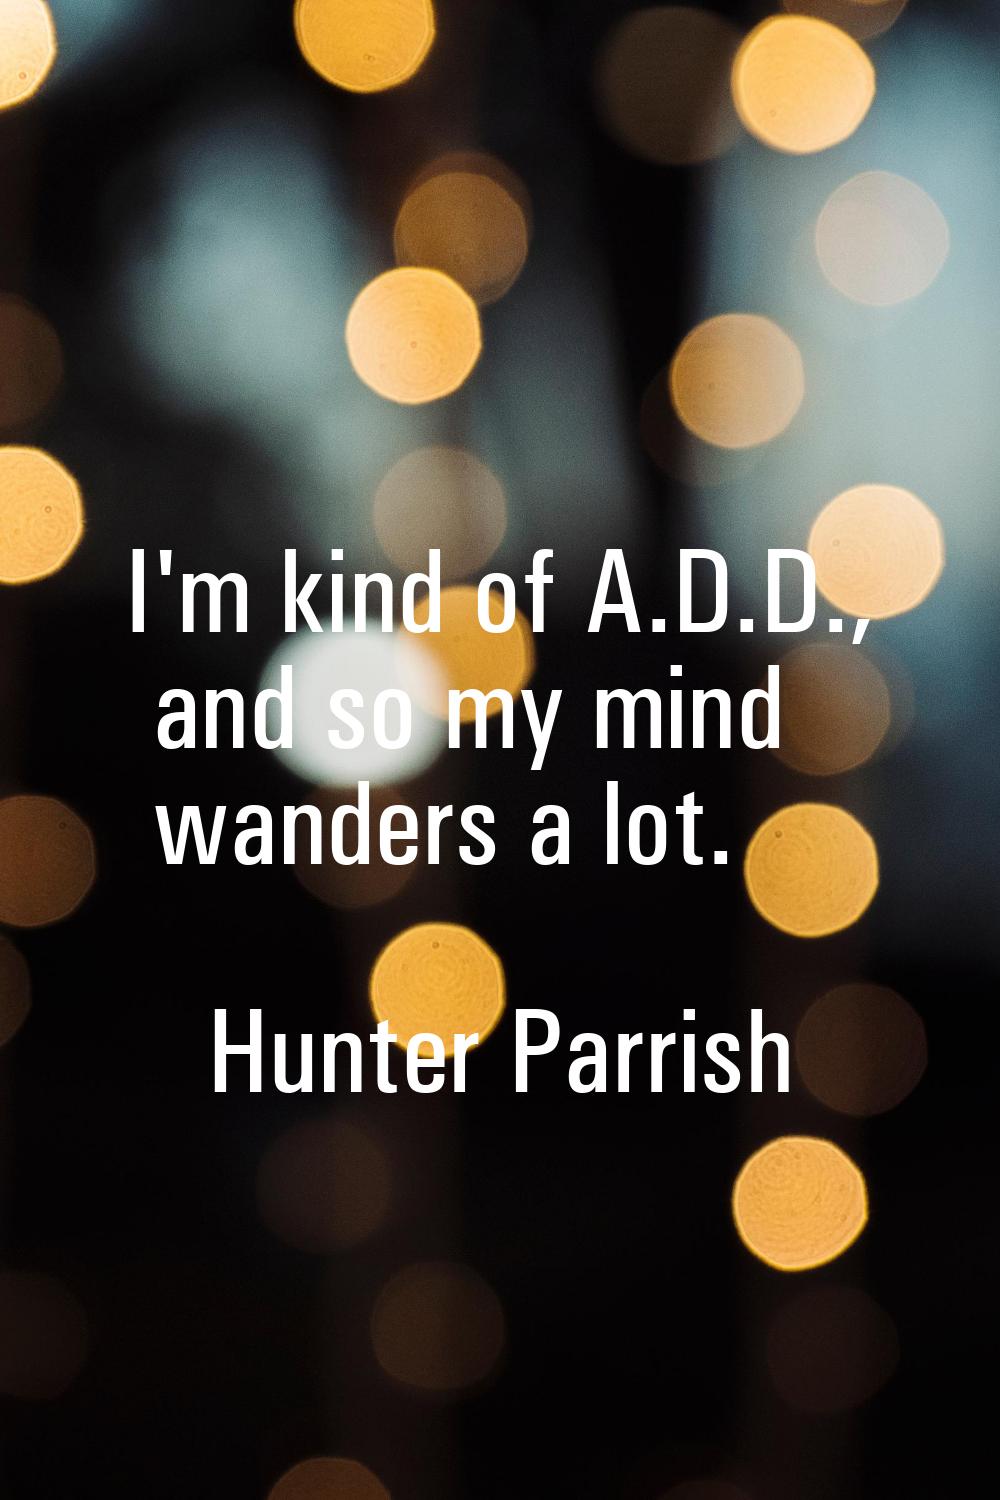 I'm kind of A.D.D., and so my mind wanders a lot.